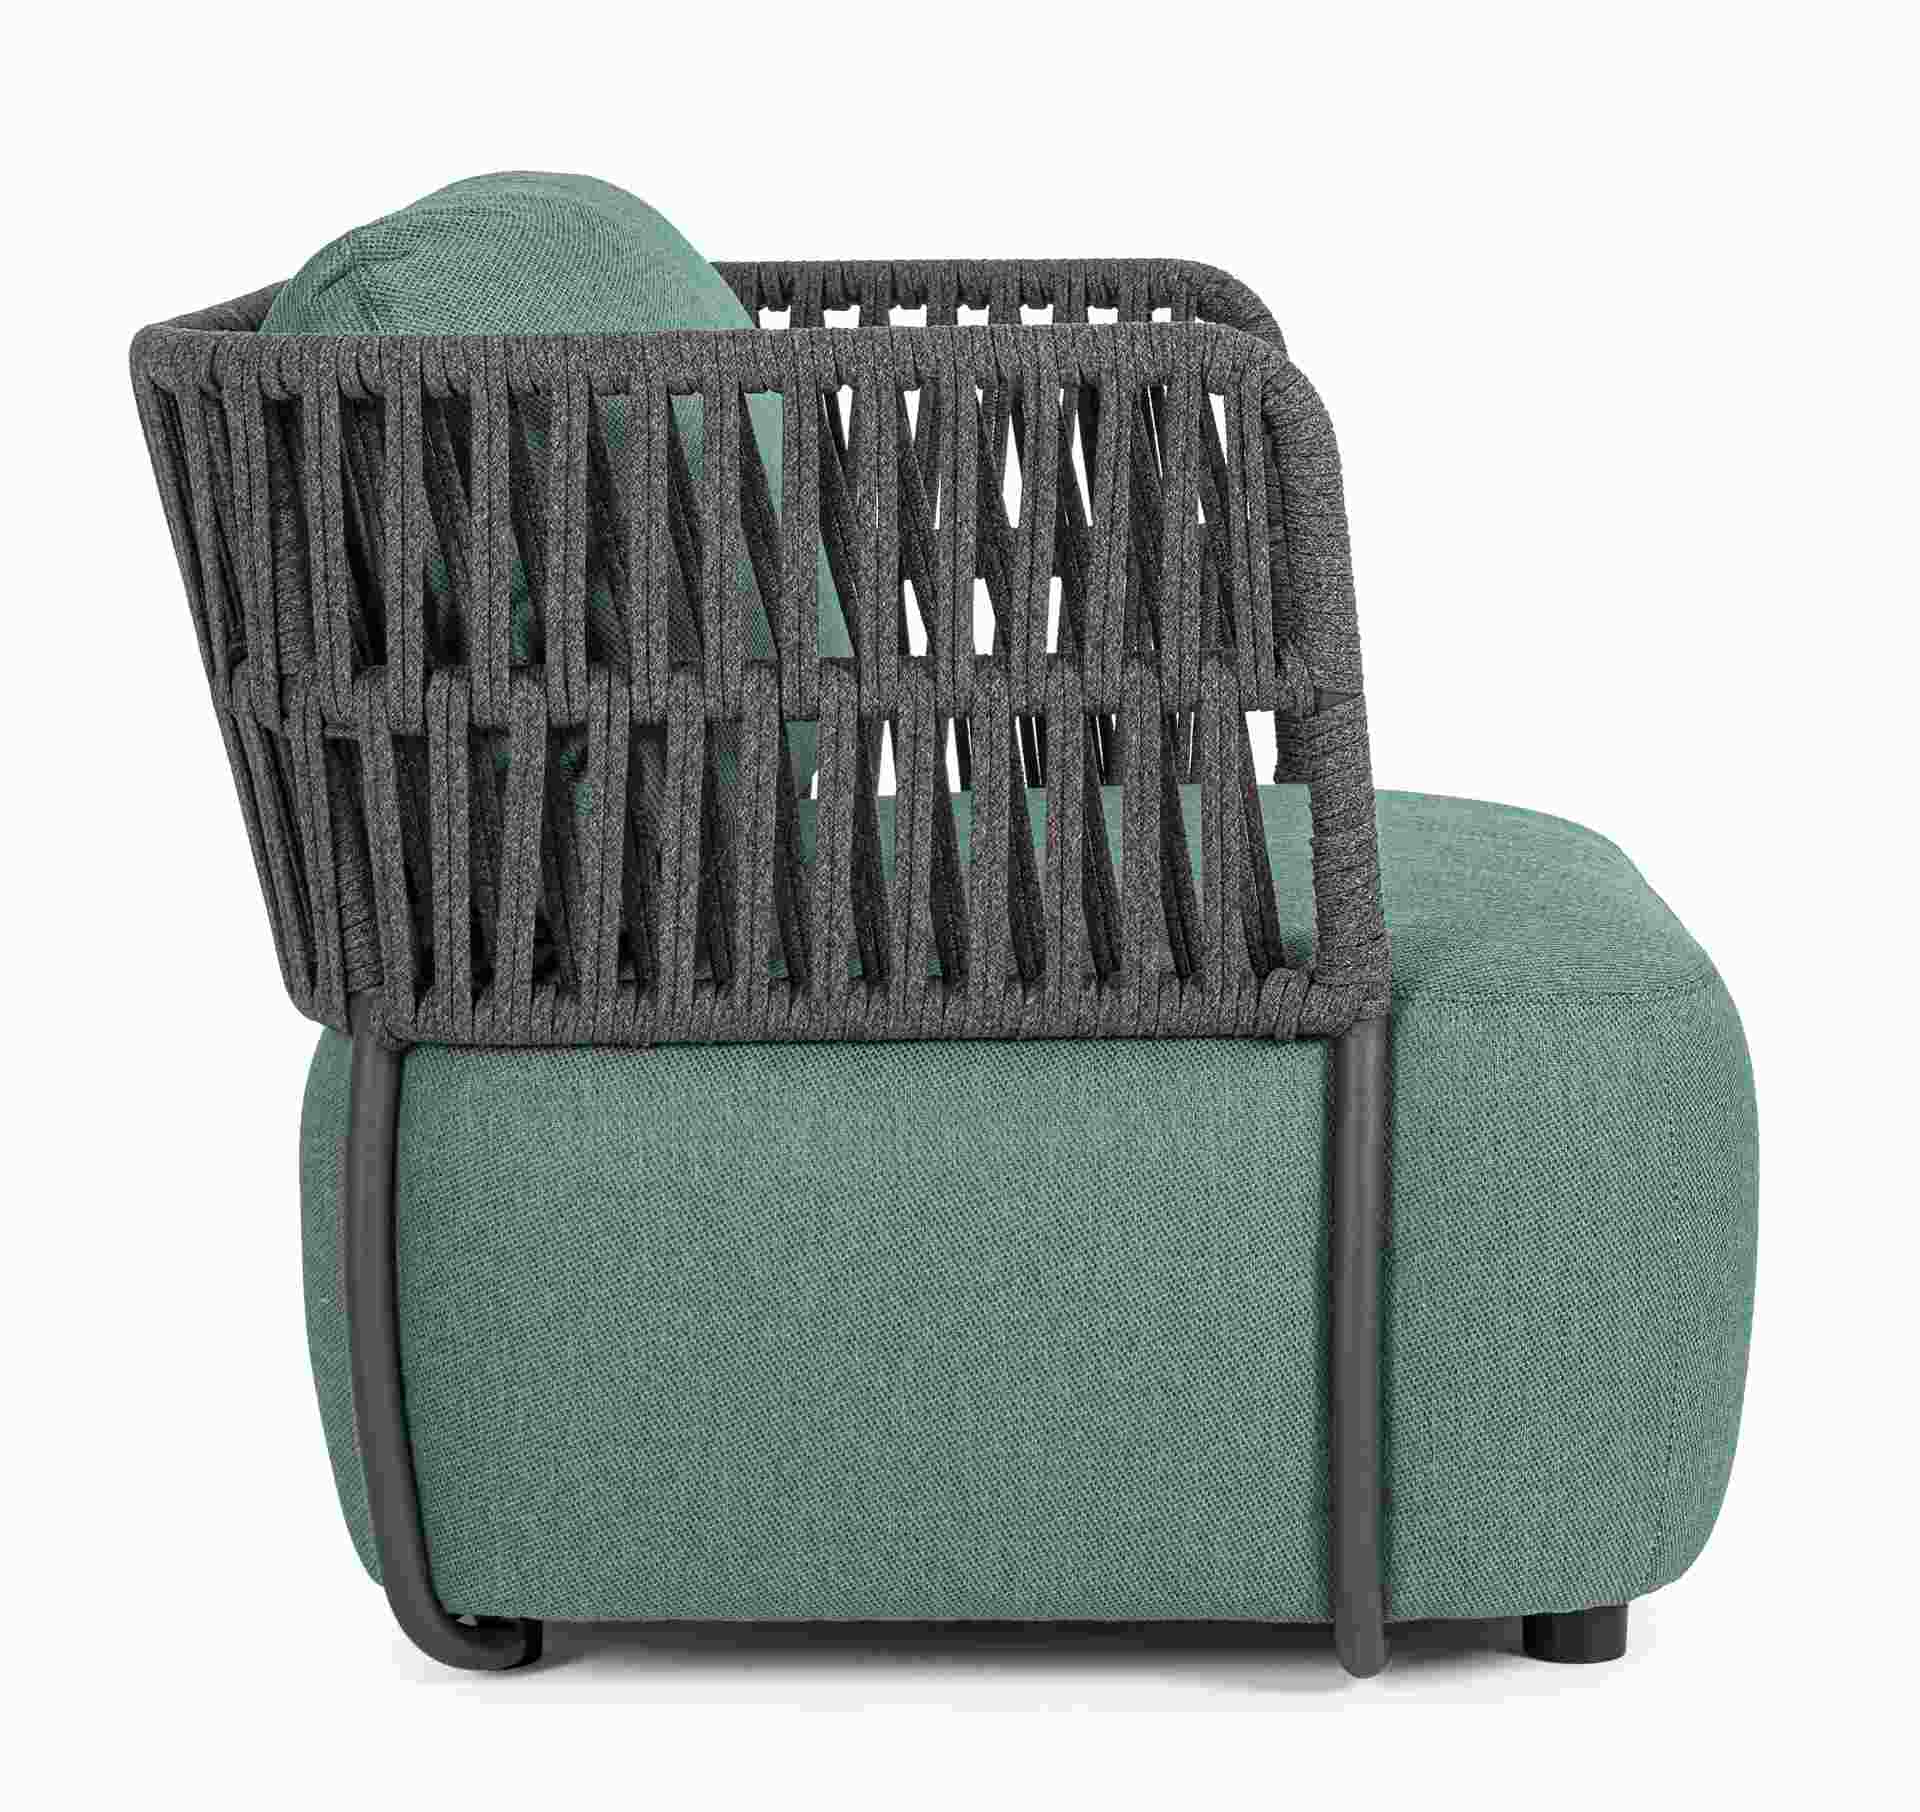 Der Gartensessel Palmer überzeugt mit seinem modernen Design. Gefertigt wurde er aus Olefin-Stoff, welcher einen grüne Farbton besitzt. Das Gestell ist aus Aluminium und hat eine Anthrazit Farbe. Der Sessel verfügt über eine Sitzhöhe von 40 cm und ist für